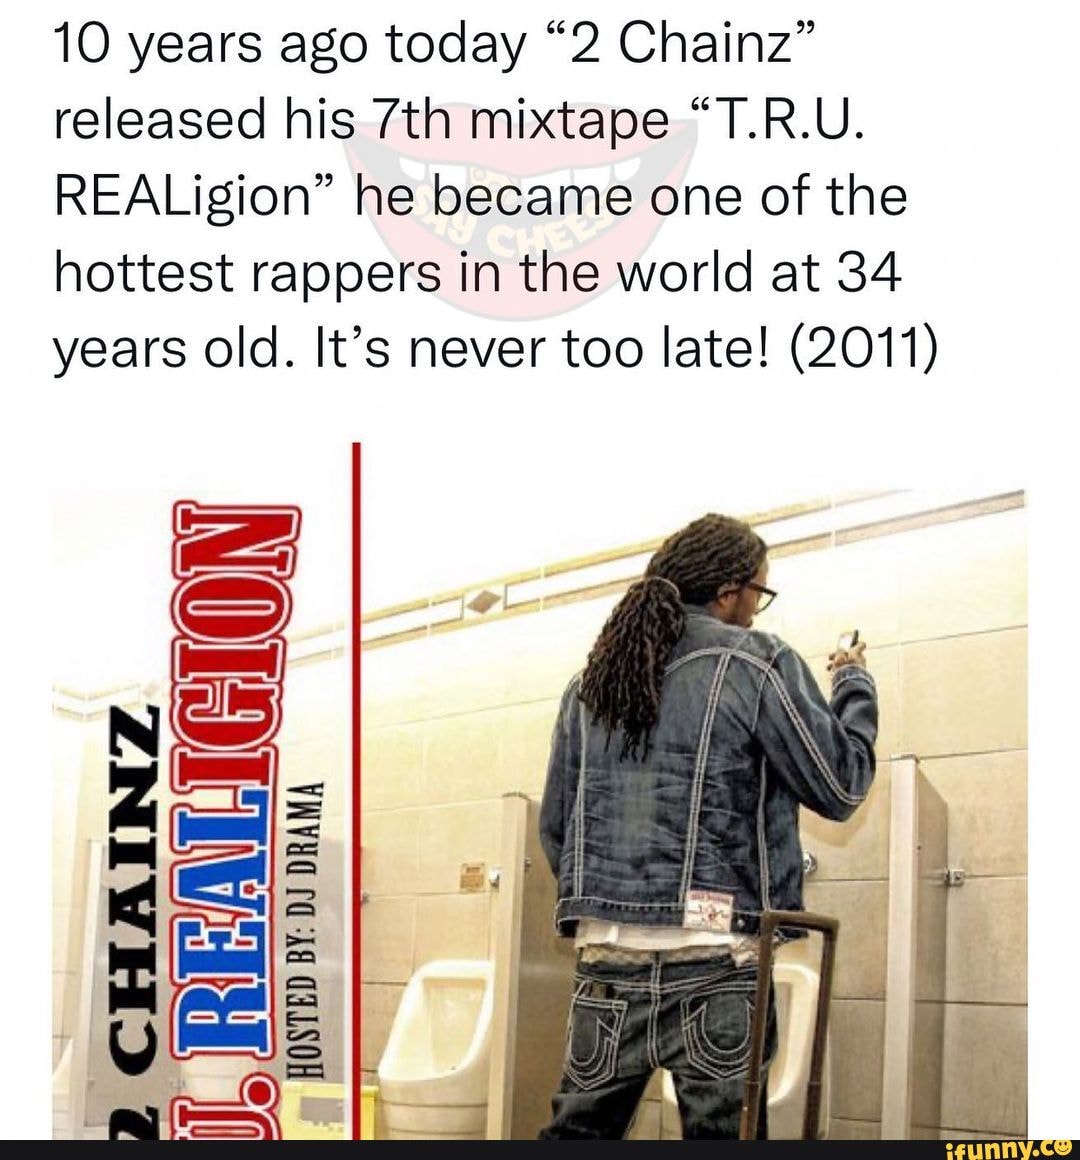 tru realigion 2 chainz mixtape